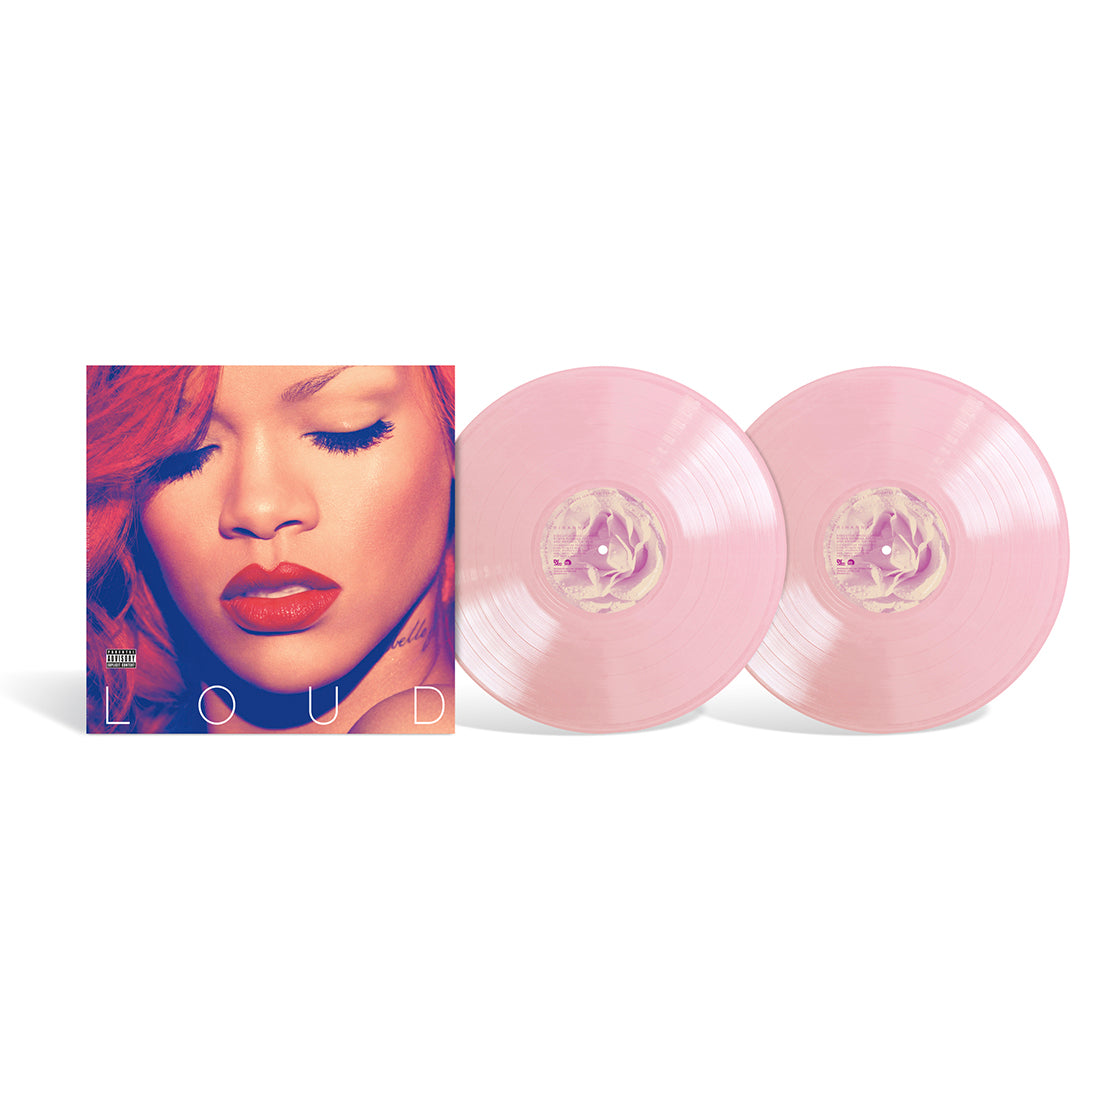 Rihanna - Loud: Opaque Baby Pink Vinyl 2LP